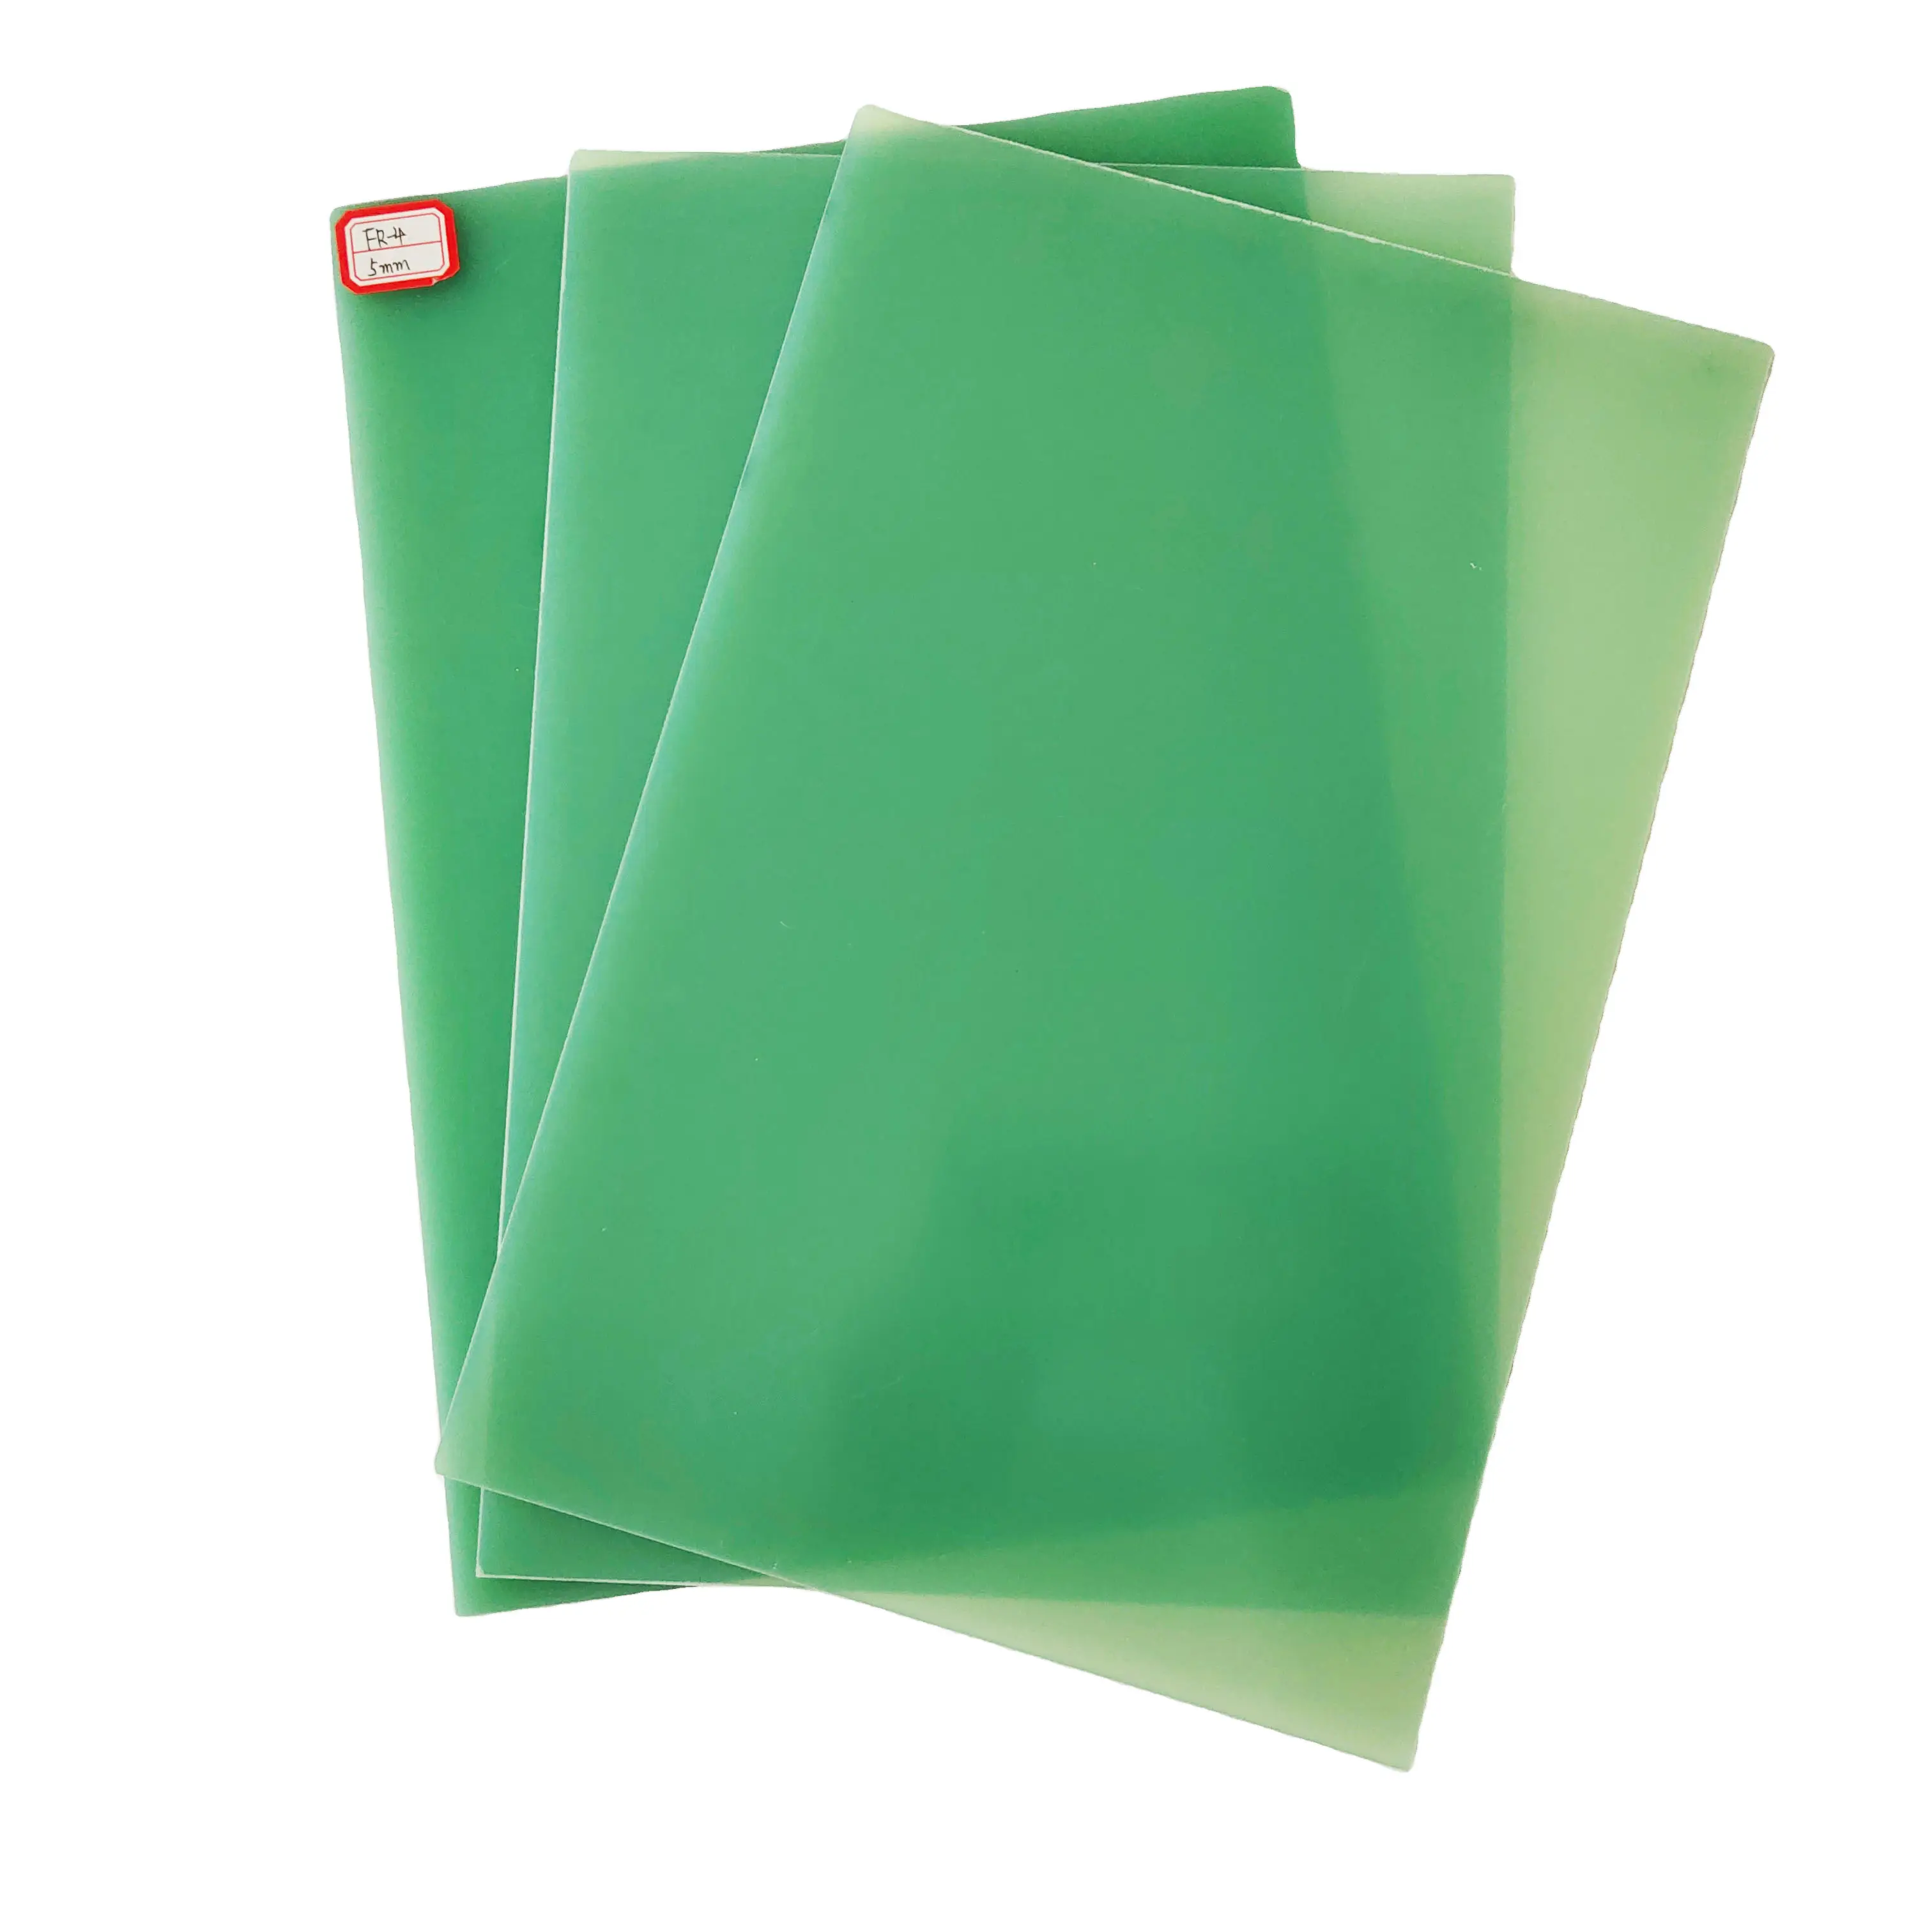 Wassergrünes Fr4 Blatt Textilienmaterial gelb G10 Fr4 Laminationsblatt/Platte Glasfaserplatte für Batteriepack